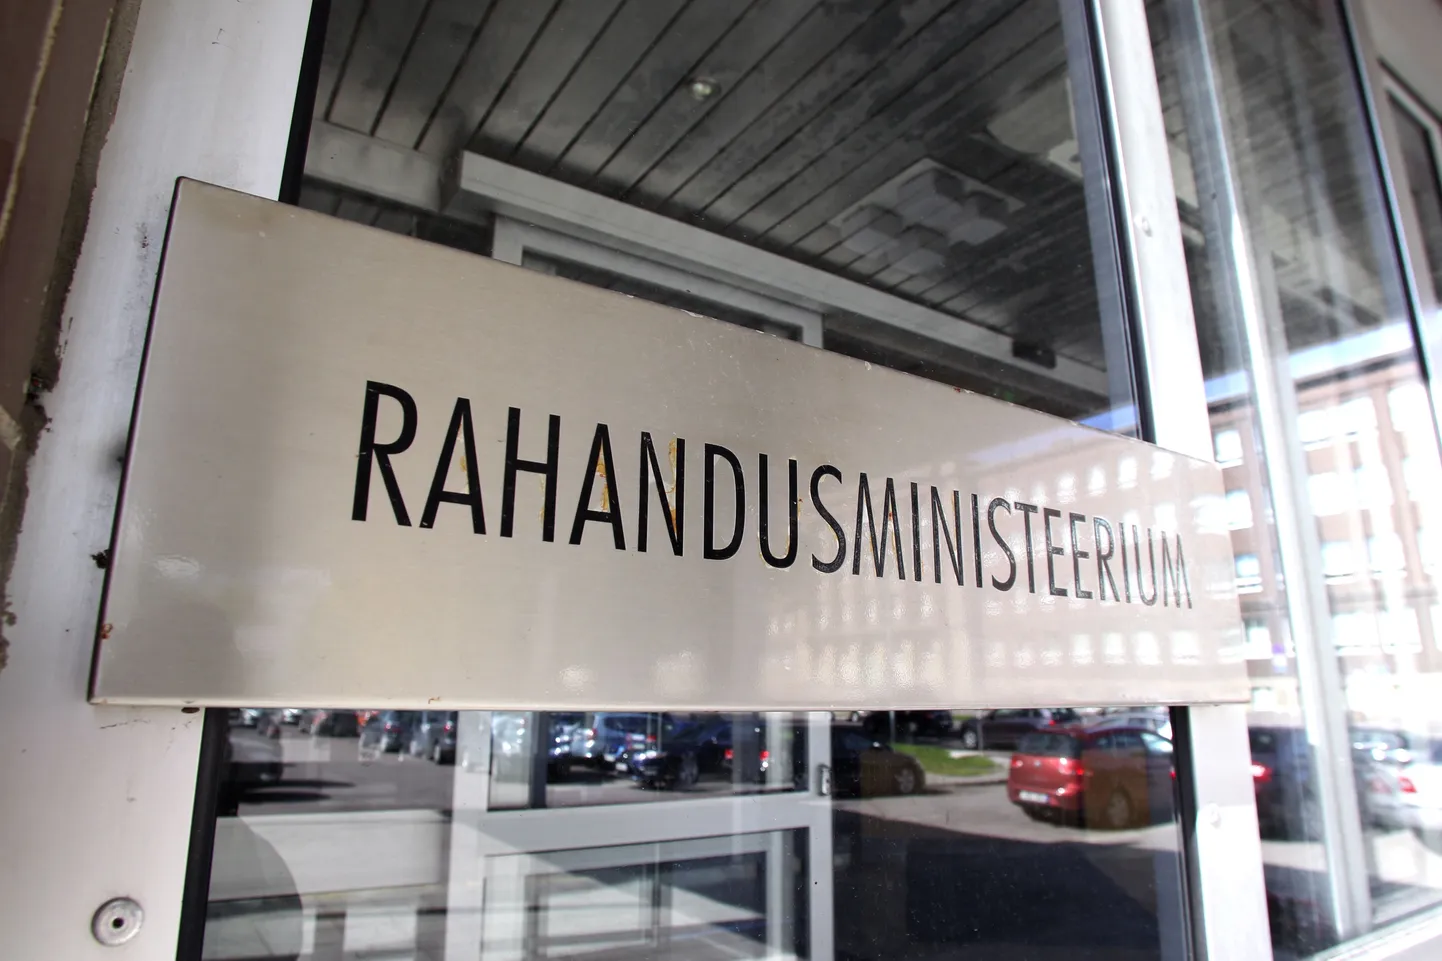 RIIGI KINNISVARA; TALLINN, EESTI, 29AUG13.
EV Rahandusministeerium.
th/Foto TOOMAS HUIK/POSTIMEES